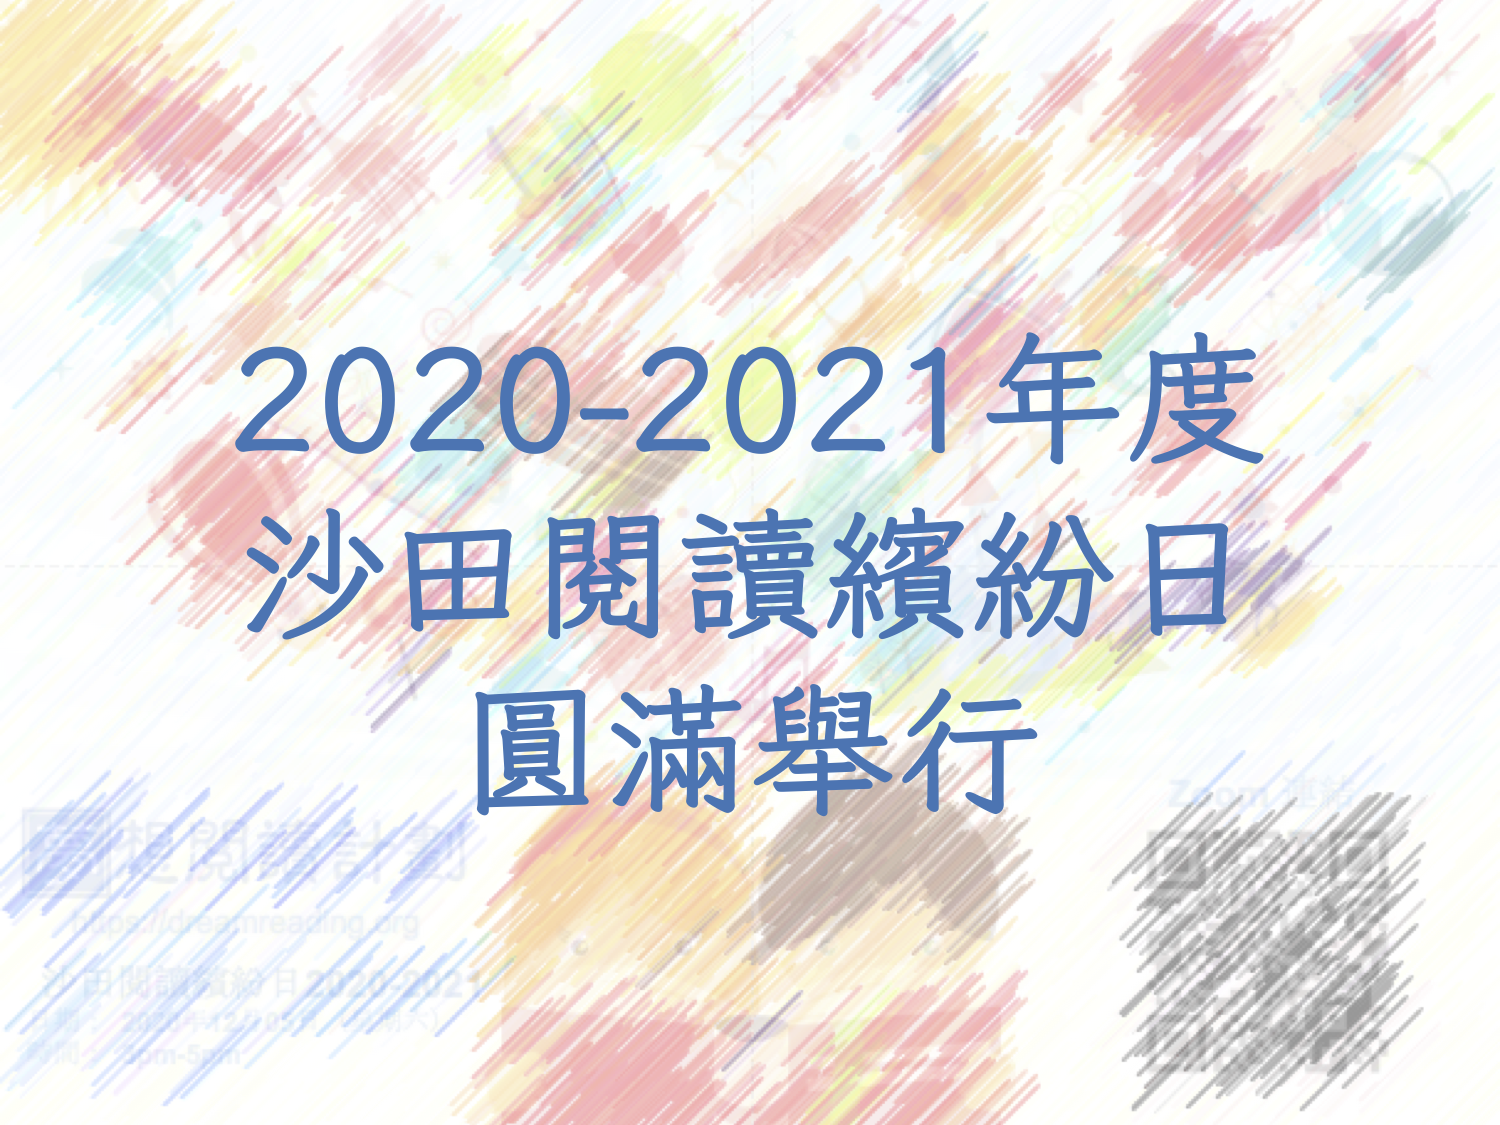 2020-2021年度沙田閱讀繽紛日圓滿舉行